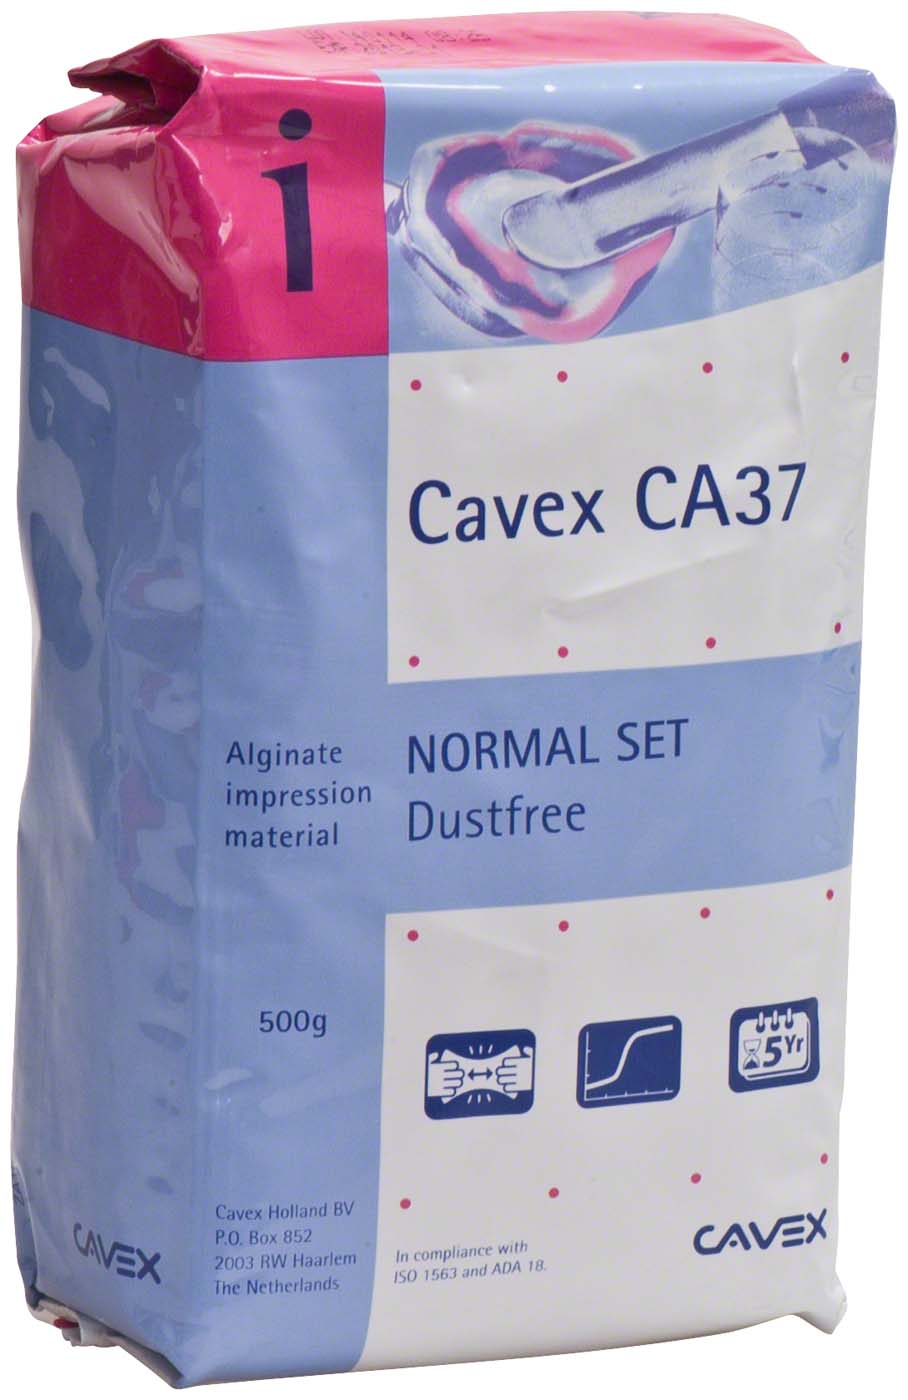 CAVEX CA37 Cavex